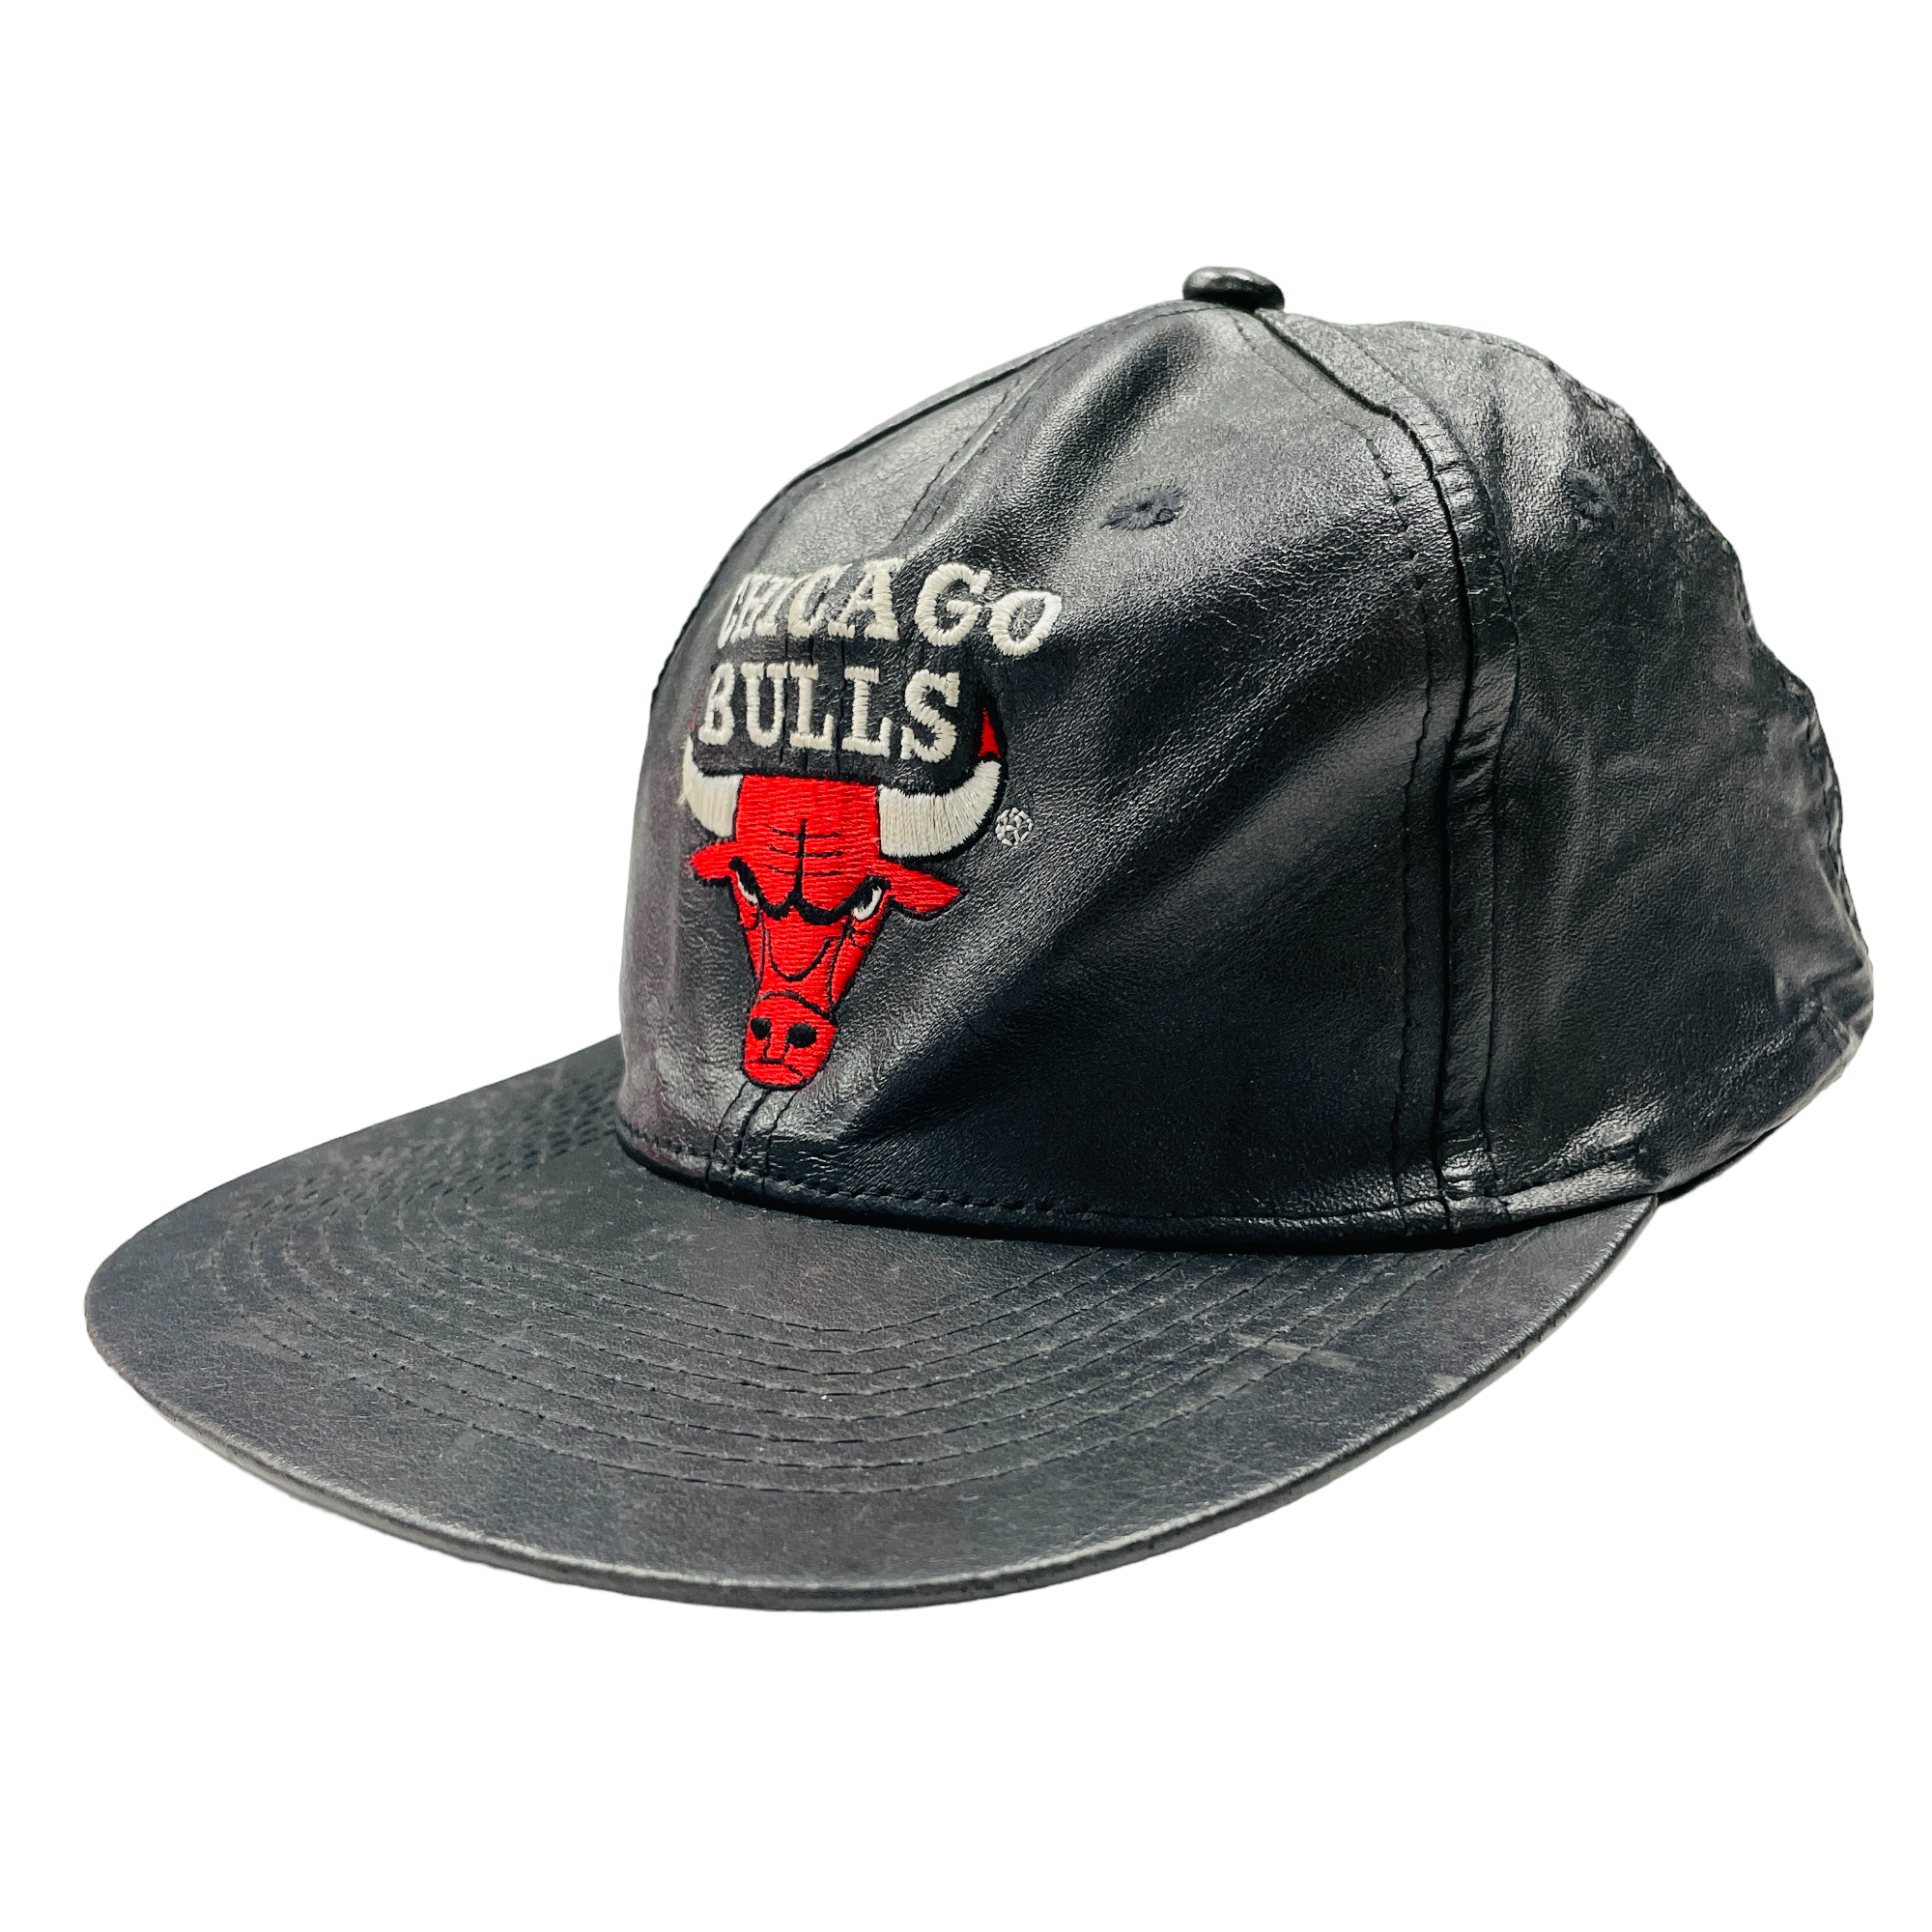 Chicago Bulls Leather Cap